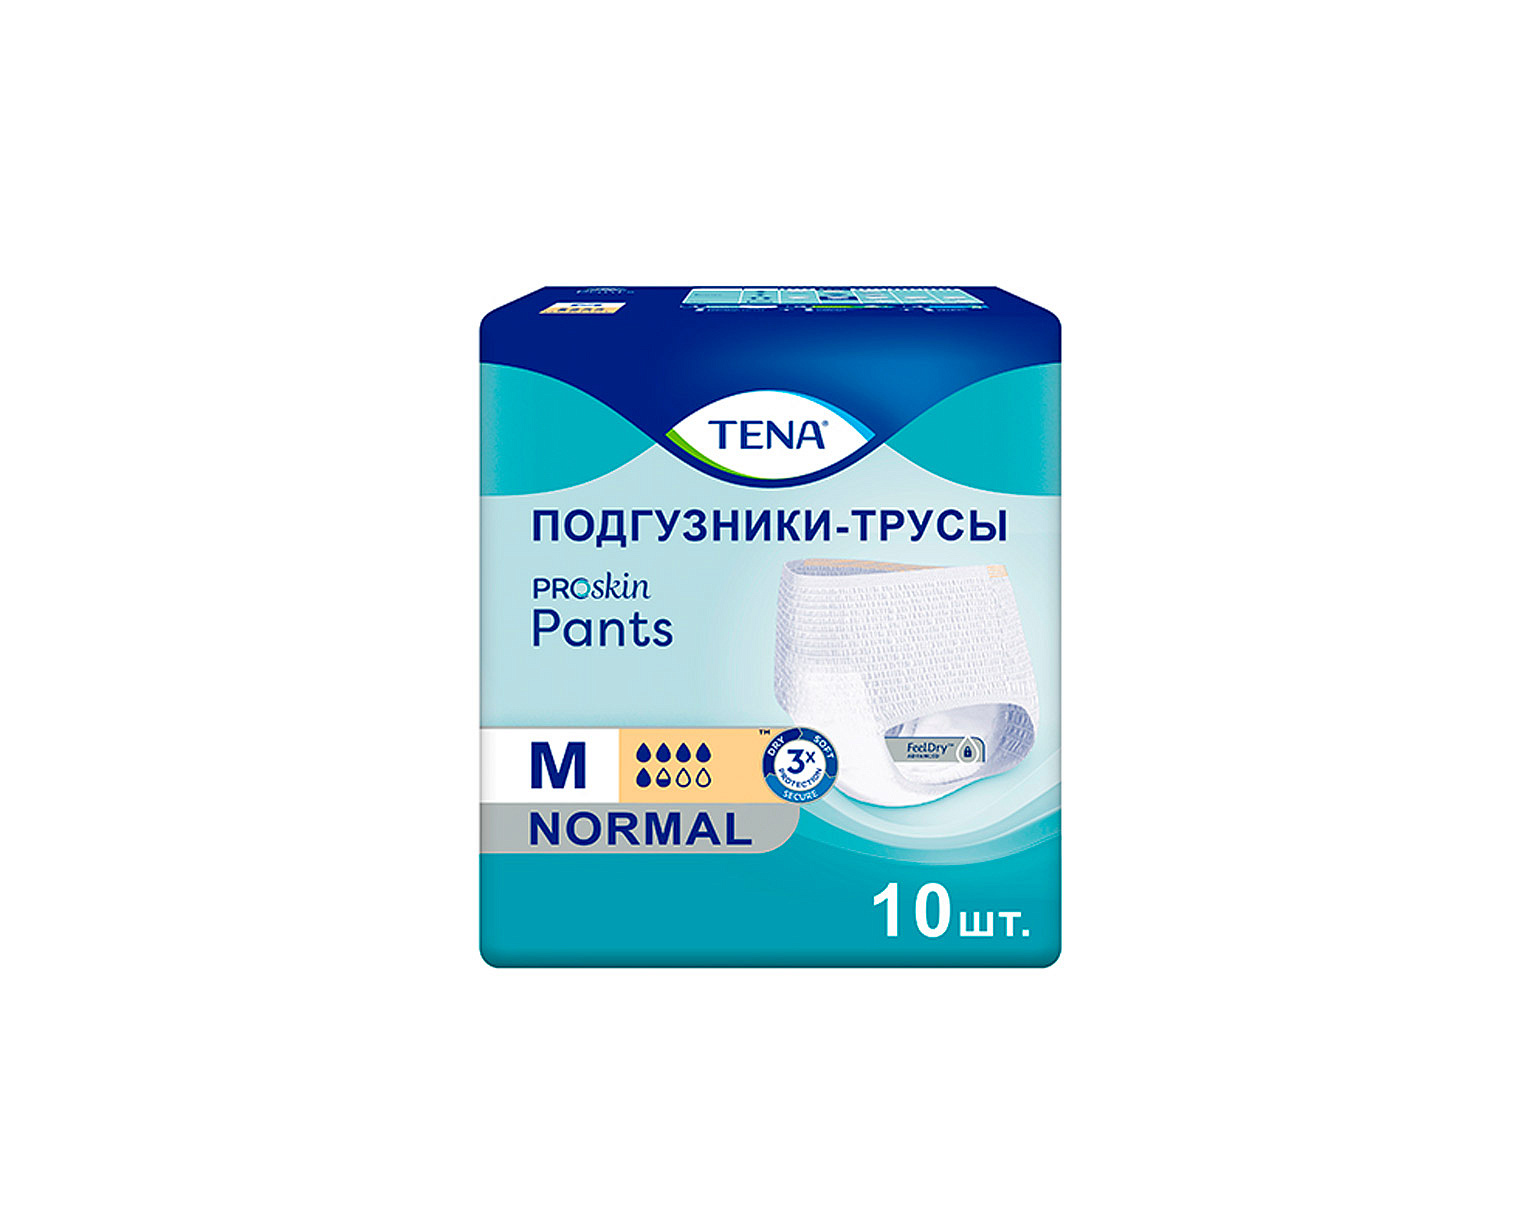 Подгузники для взрослых TENA ProSkin Pants Normal М 10 шт